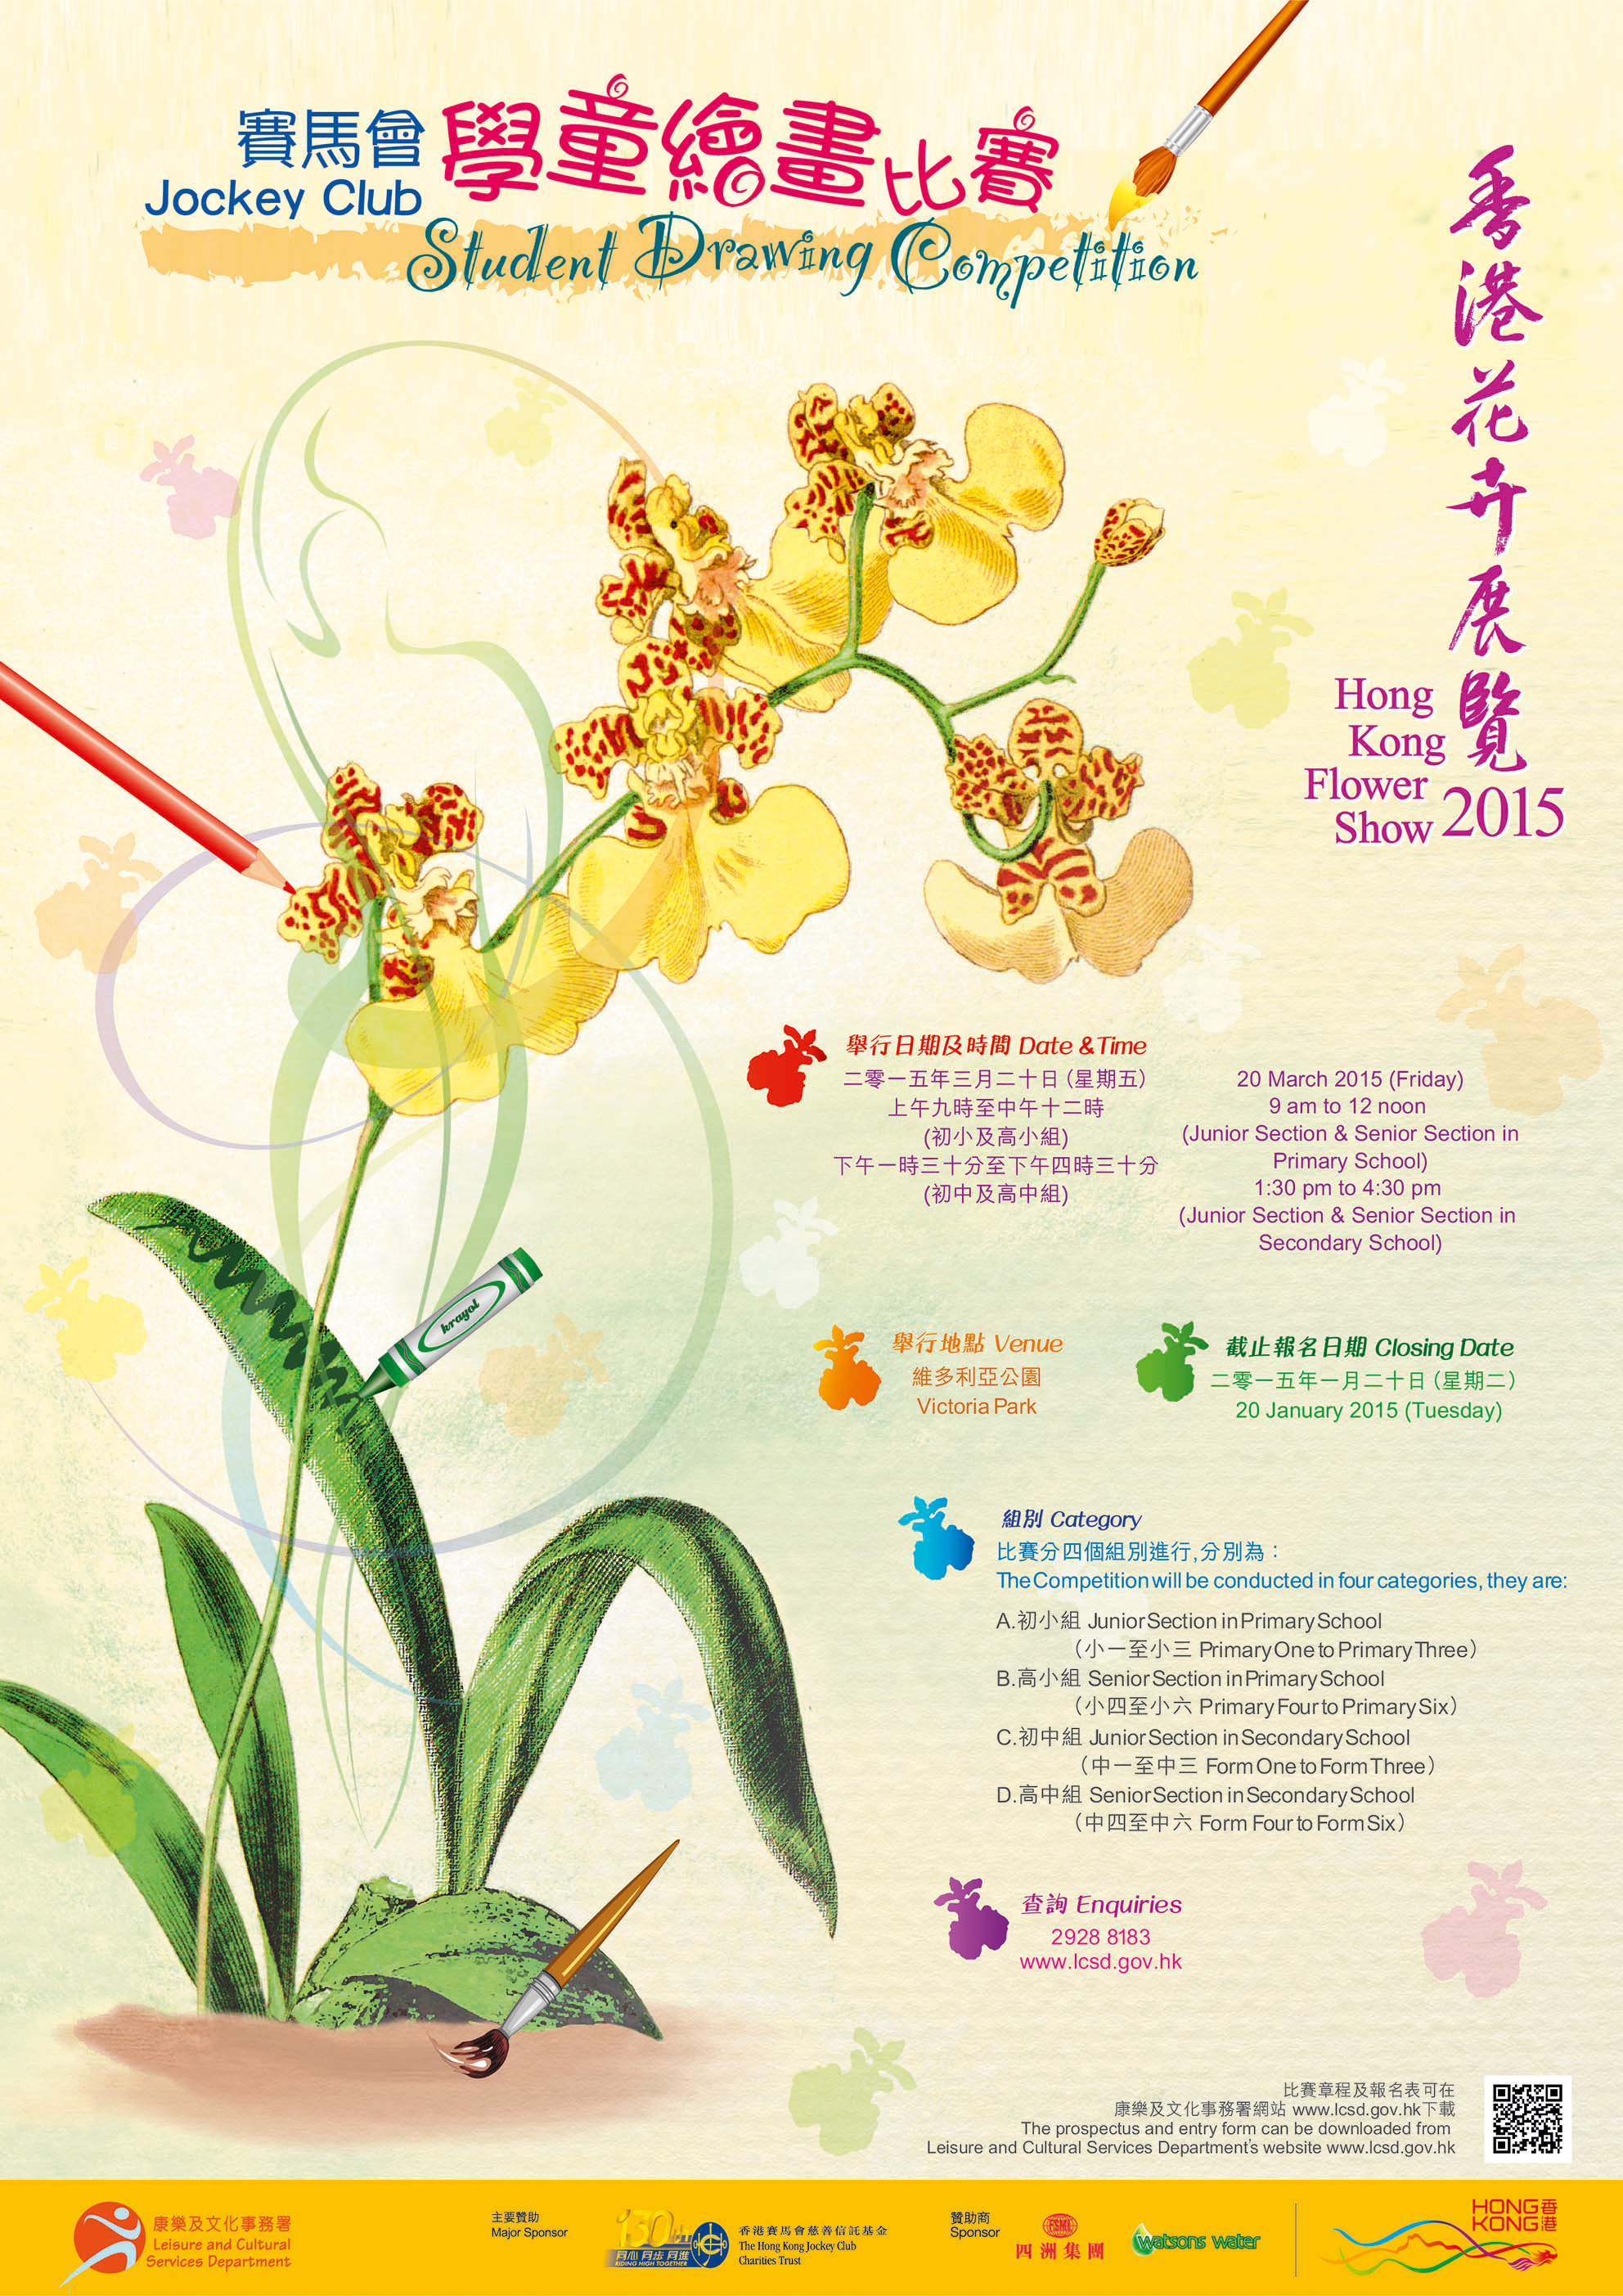 Hong Kong Flower Show 20151984 x 2806